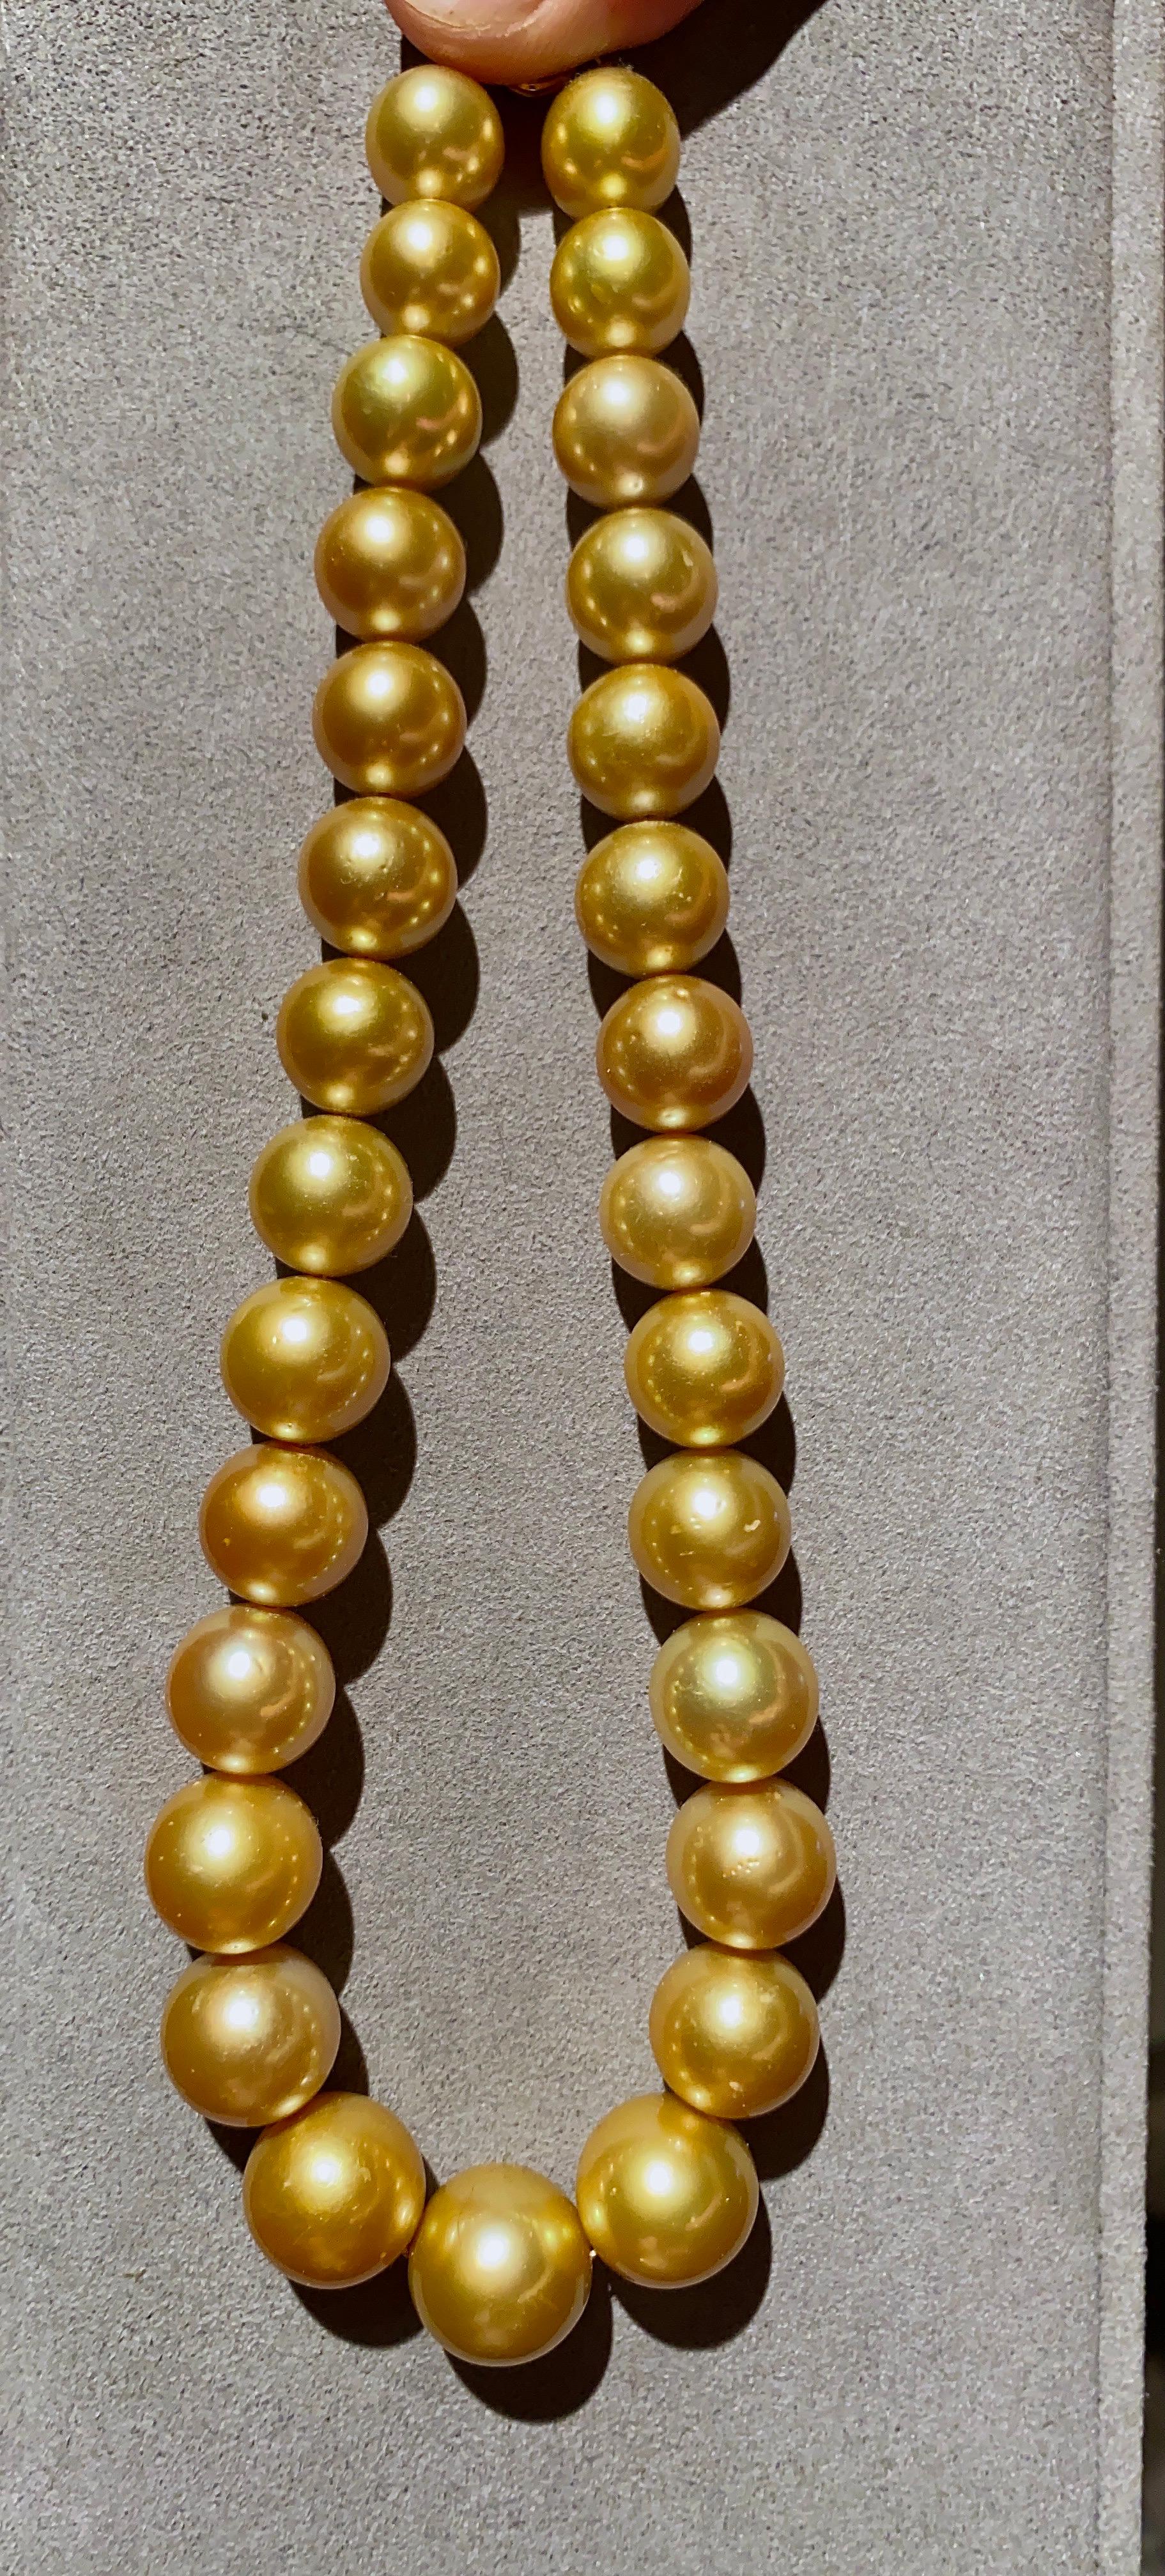 eostre necklace